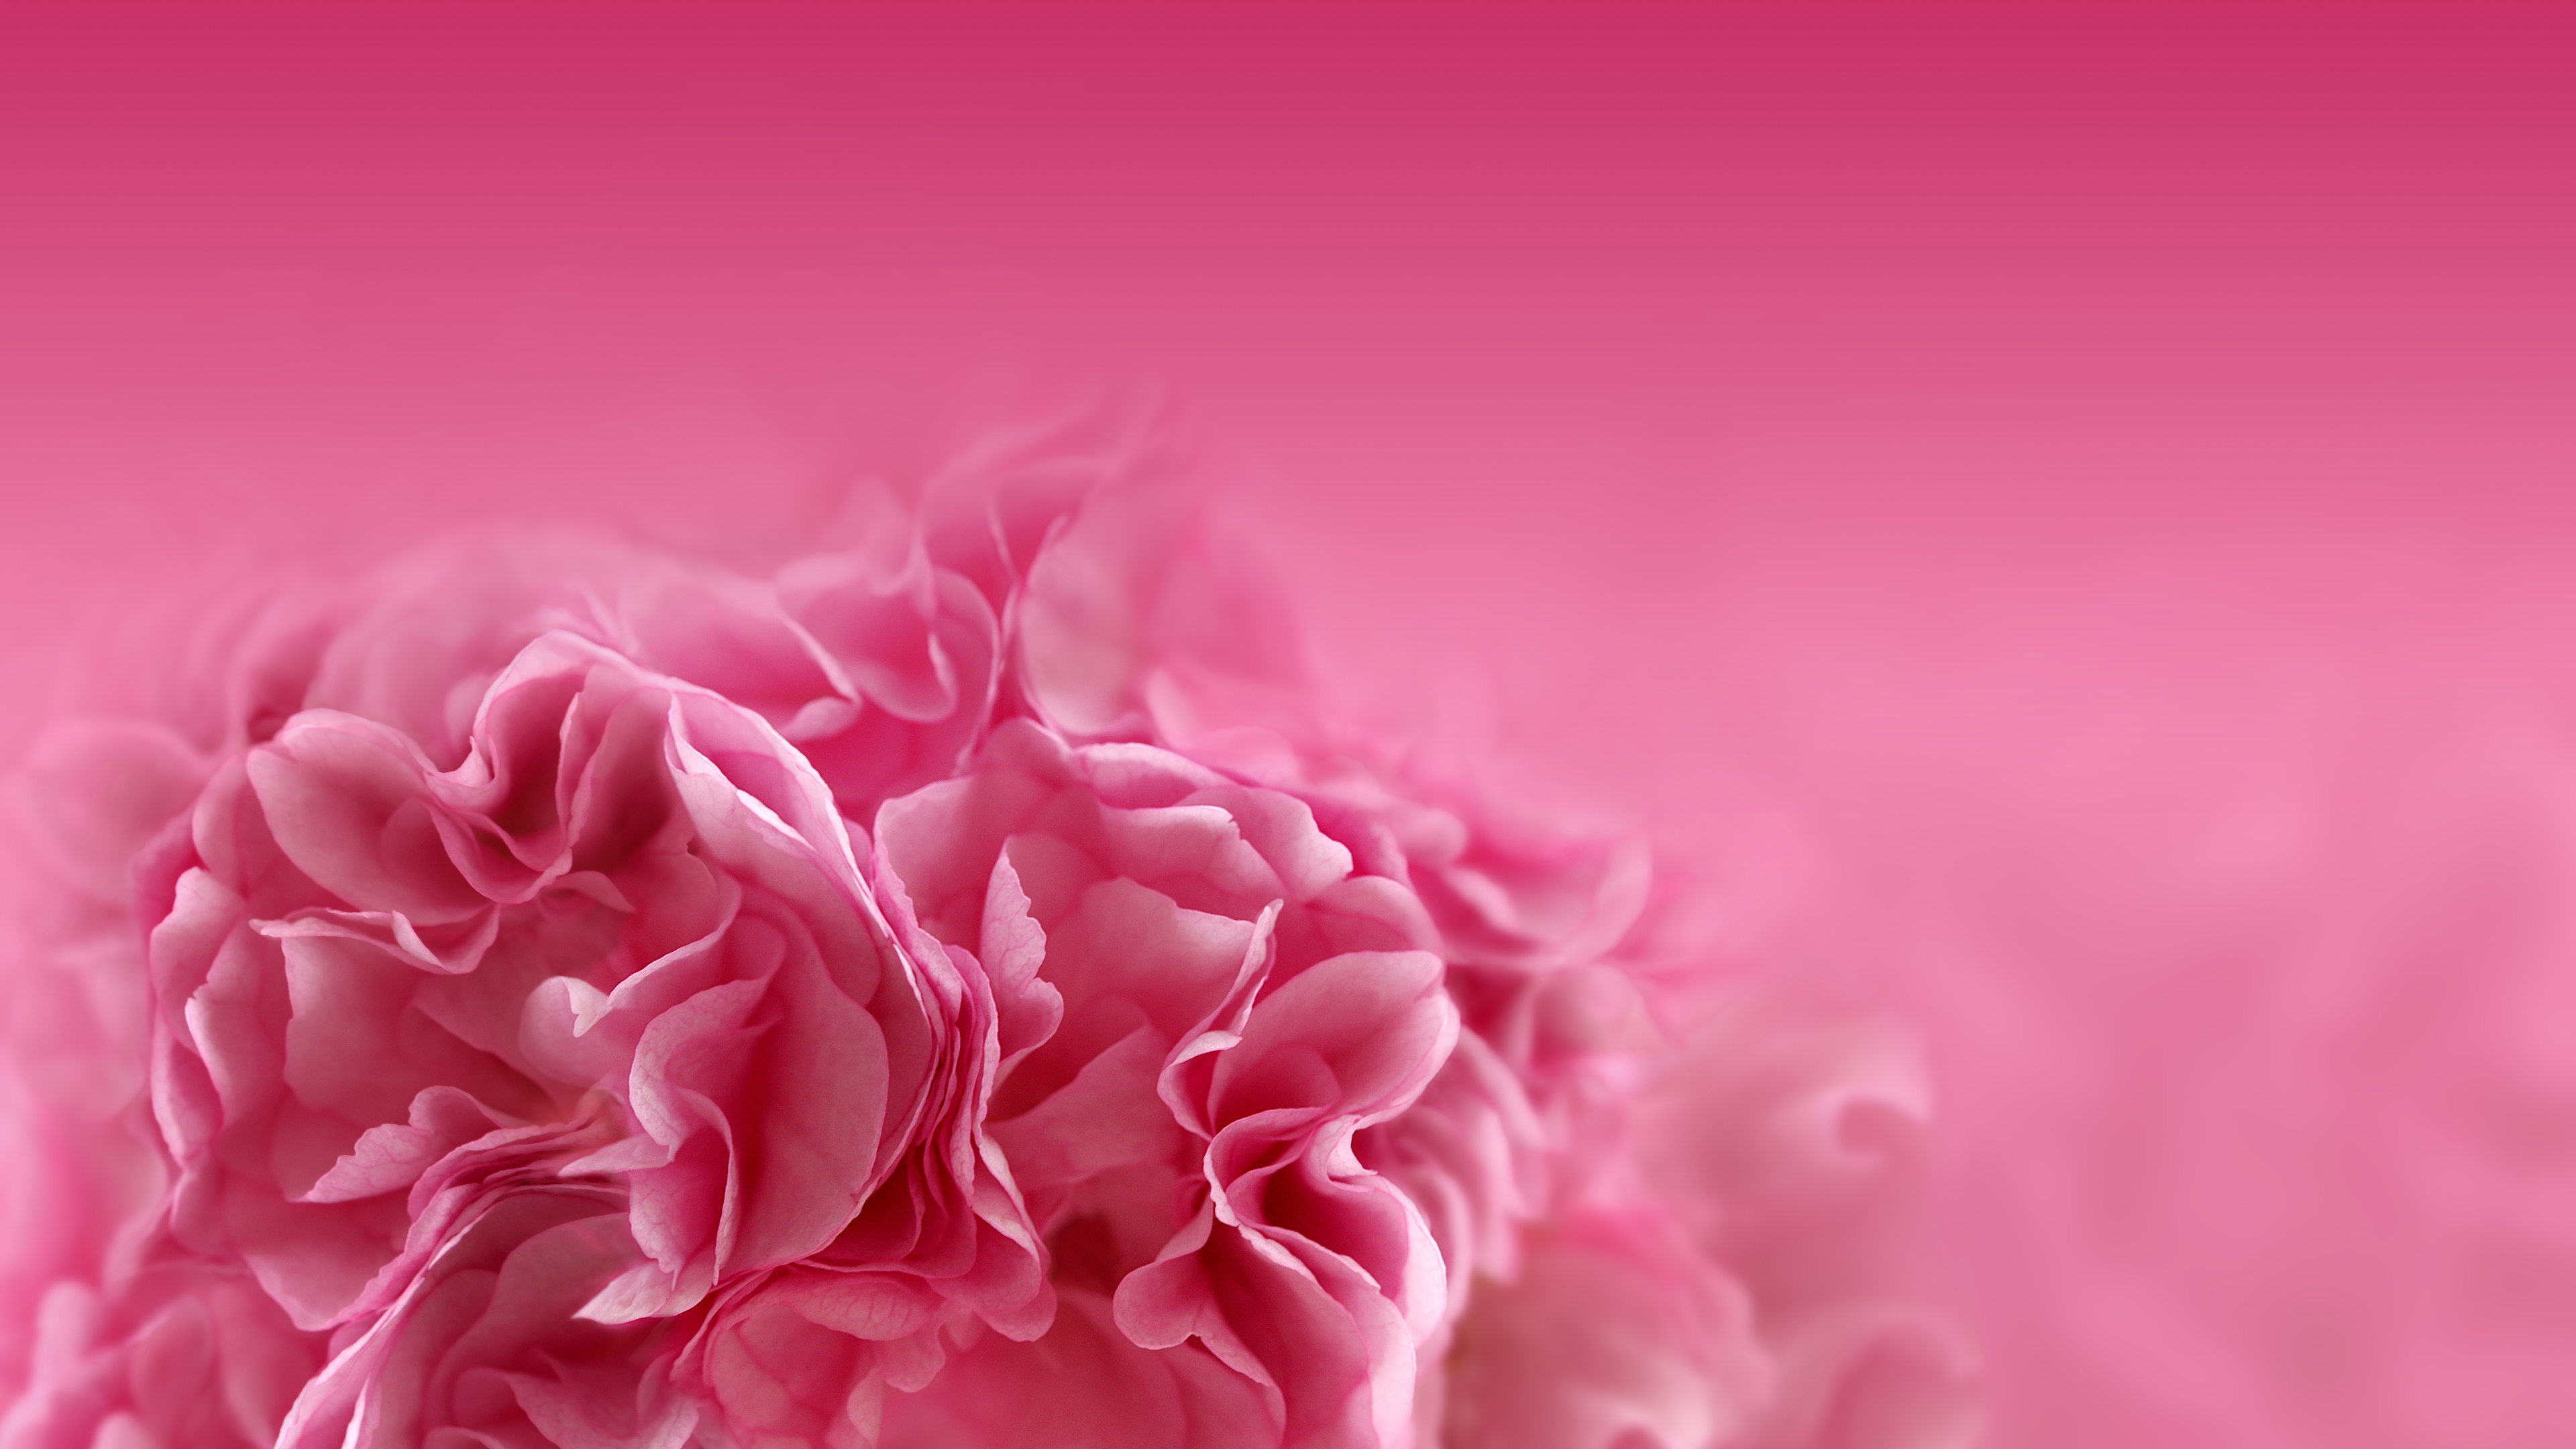 粉红色的花朵, 粉红色, 红色的, 牡丹, 康乃馨 壁纸 3840x2160 允许